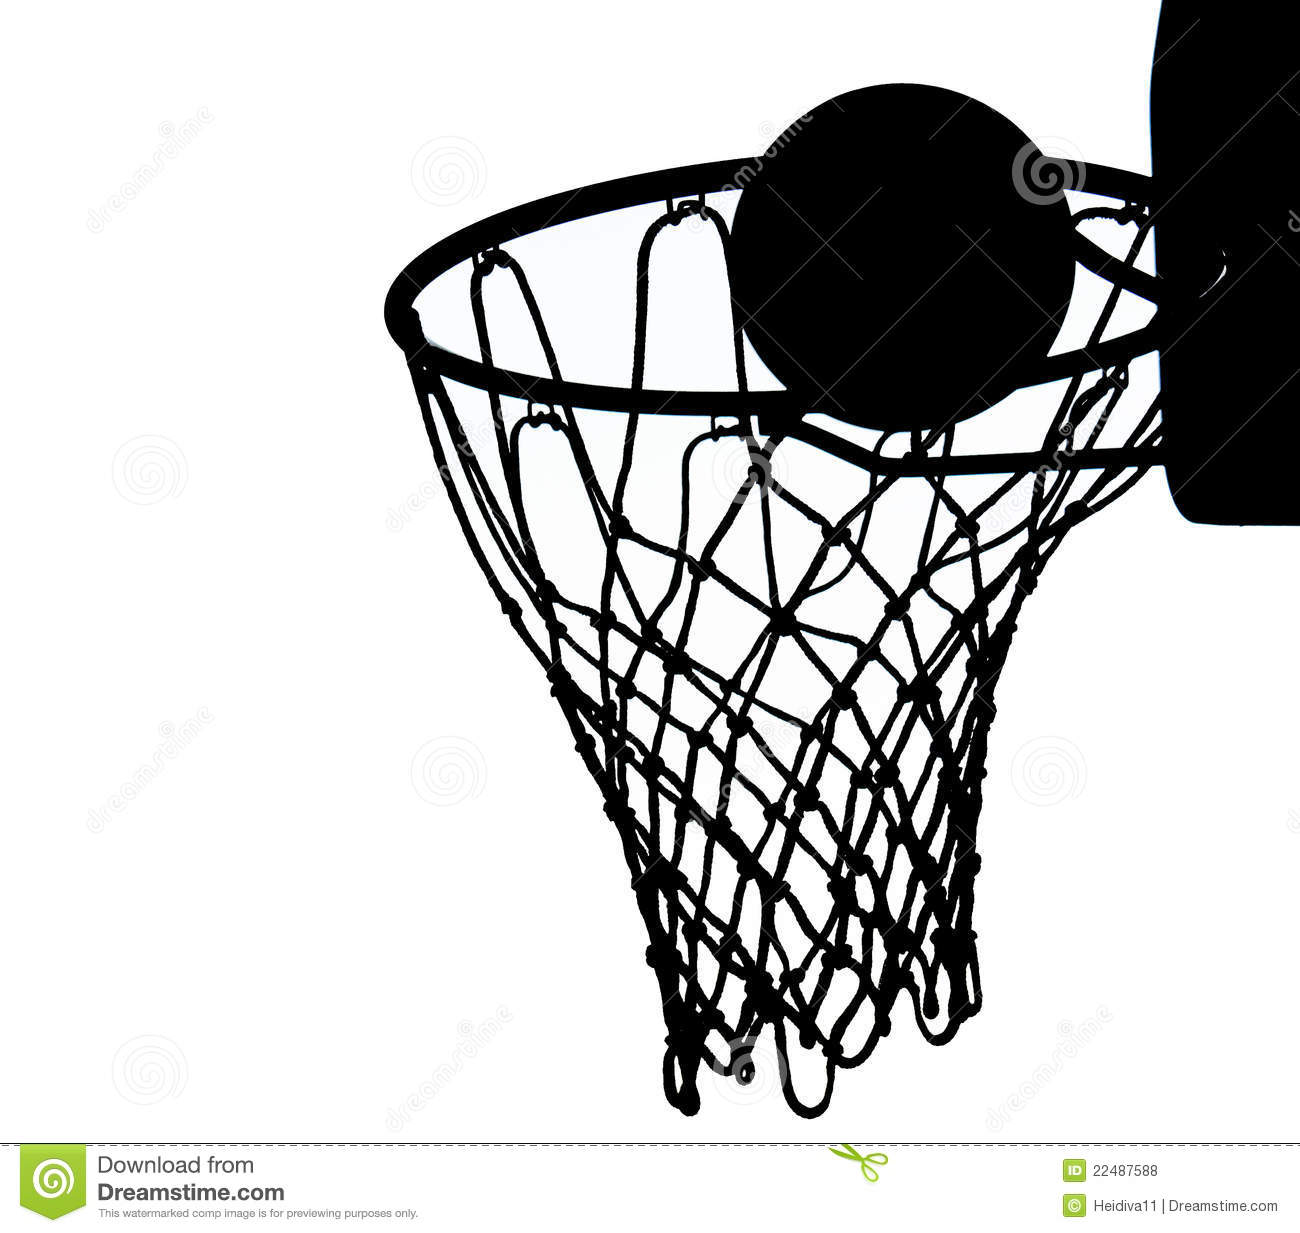 Basketball Net Silhouette Vector